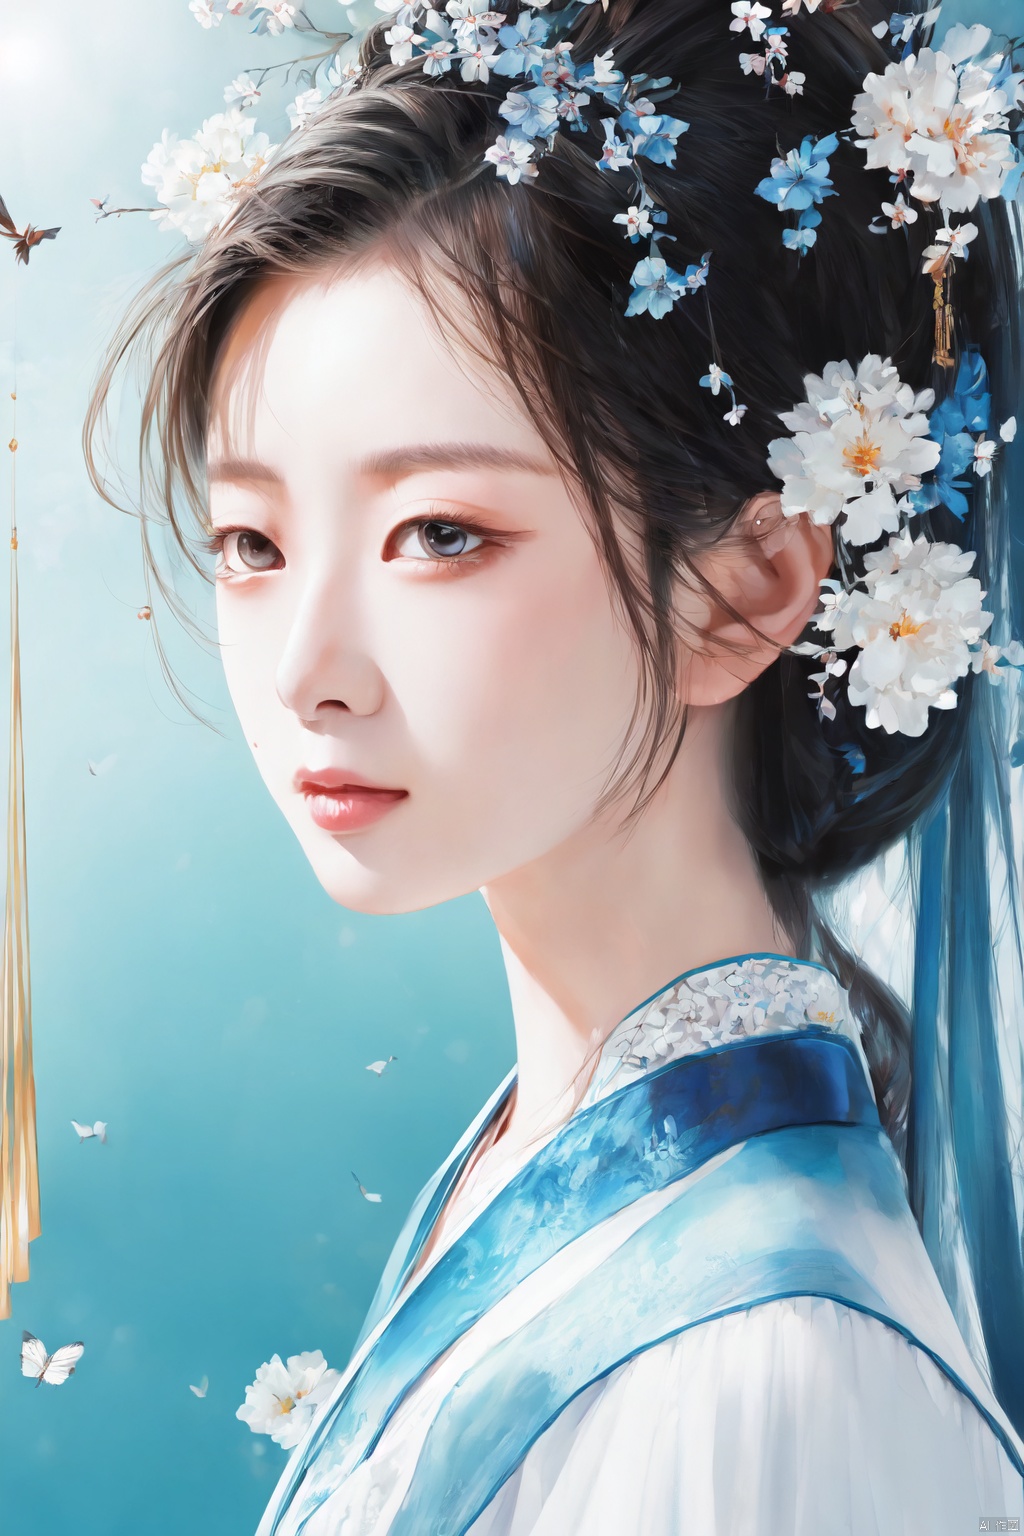  illustration, Asian girl